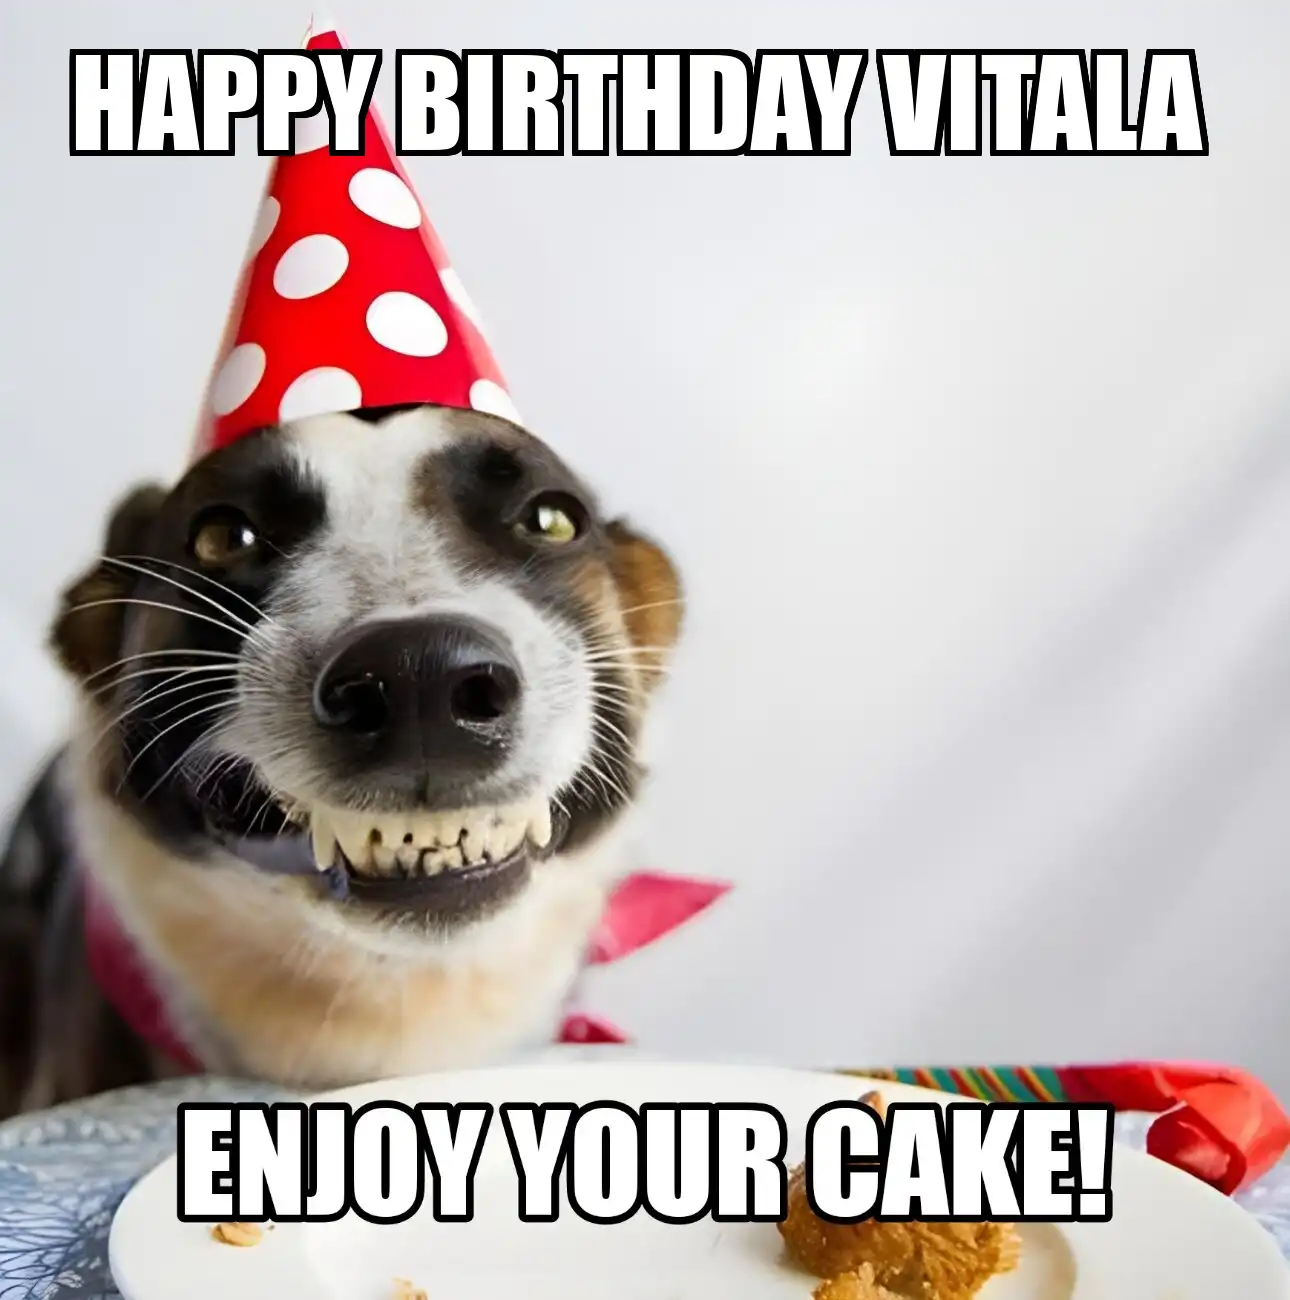 Happy Birthday Vitala Enjoy Your Cake Dog Meme